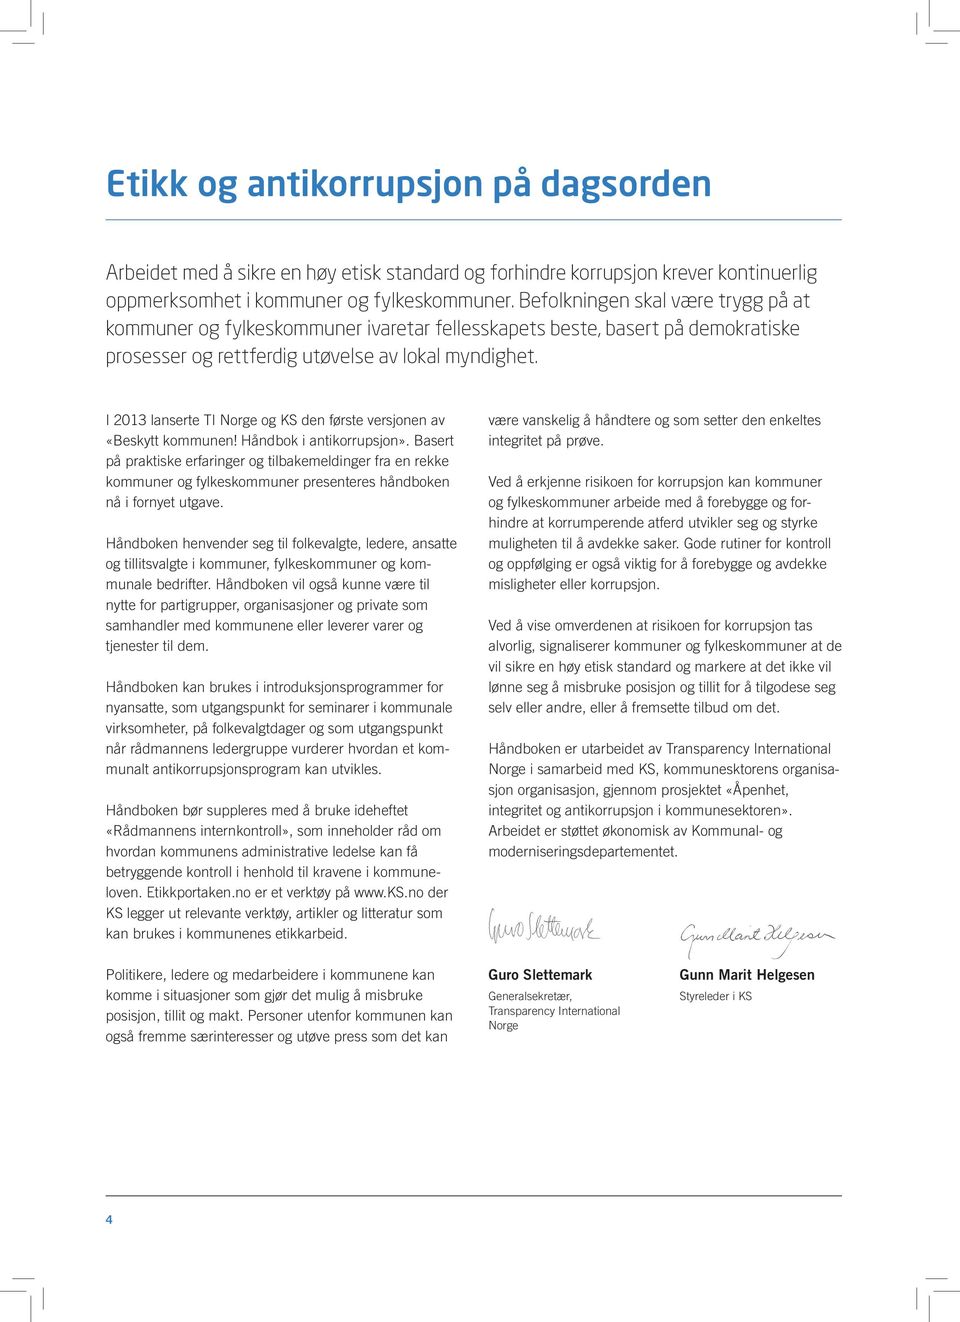 I 2013 lanserte TI Norge og KS den første versjonen av «Beskytt kommunen! Håndbok i antikorrupsjon».